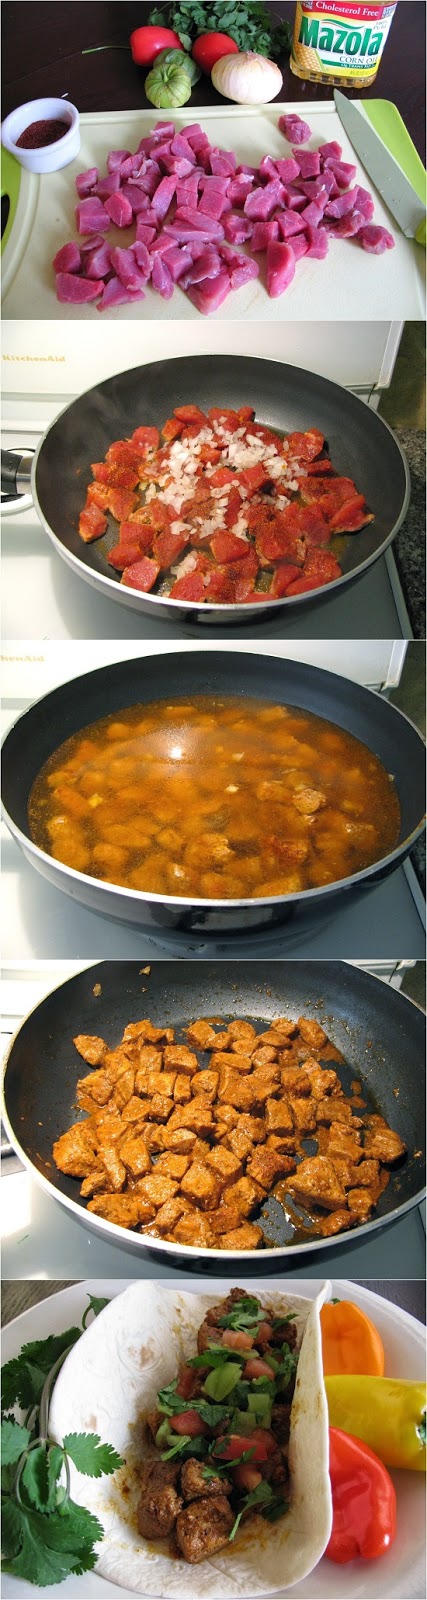 Pork-Carnitas-with-Cilantro-Tomatillo-Sauce-Recipe